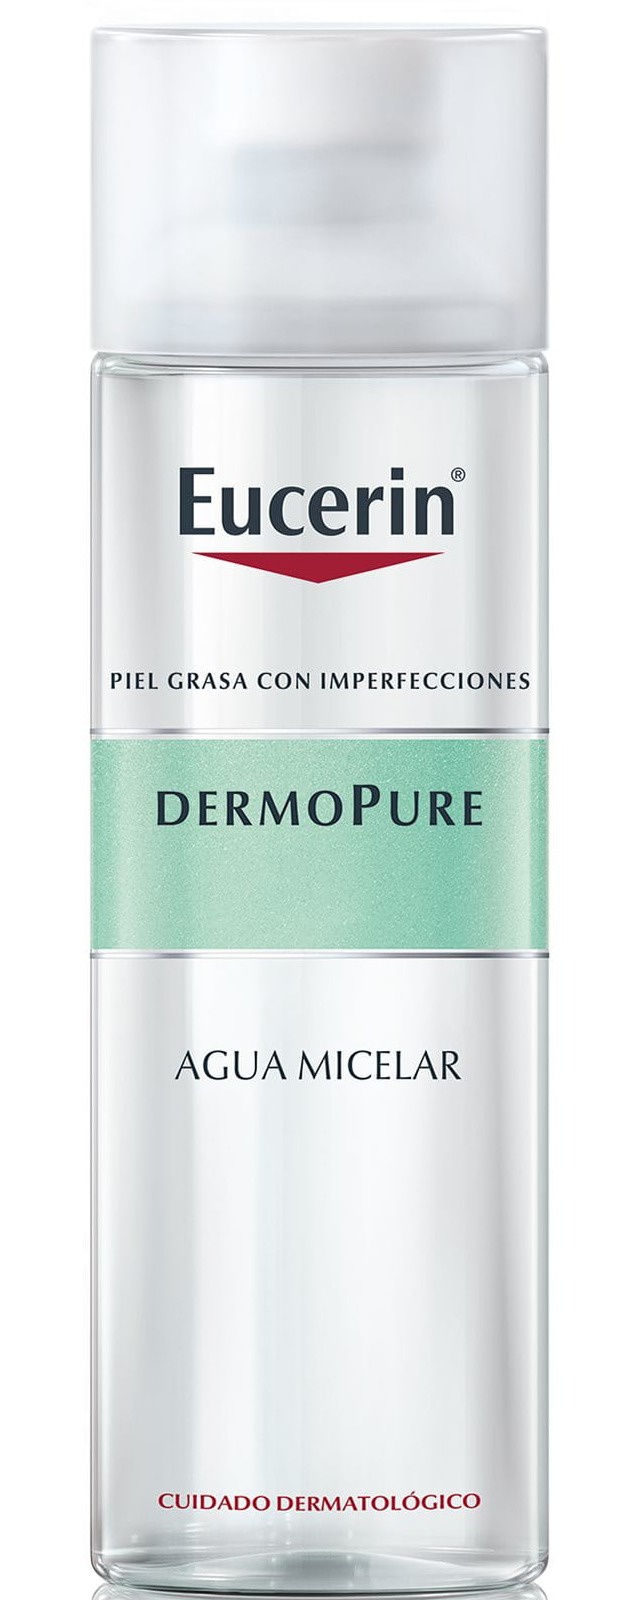 Eucerin Dermopure Agua Micelar